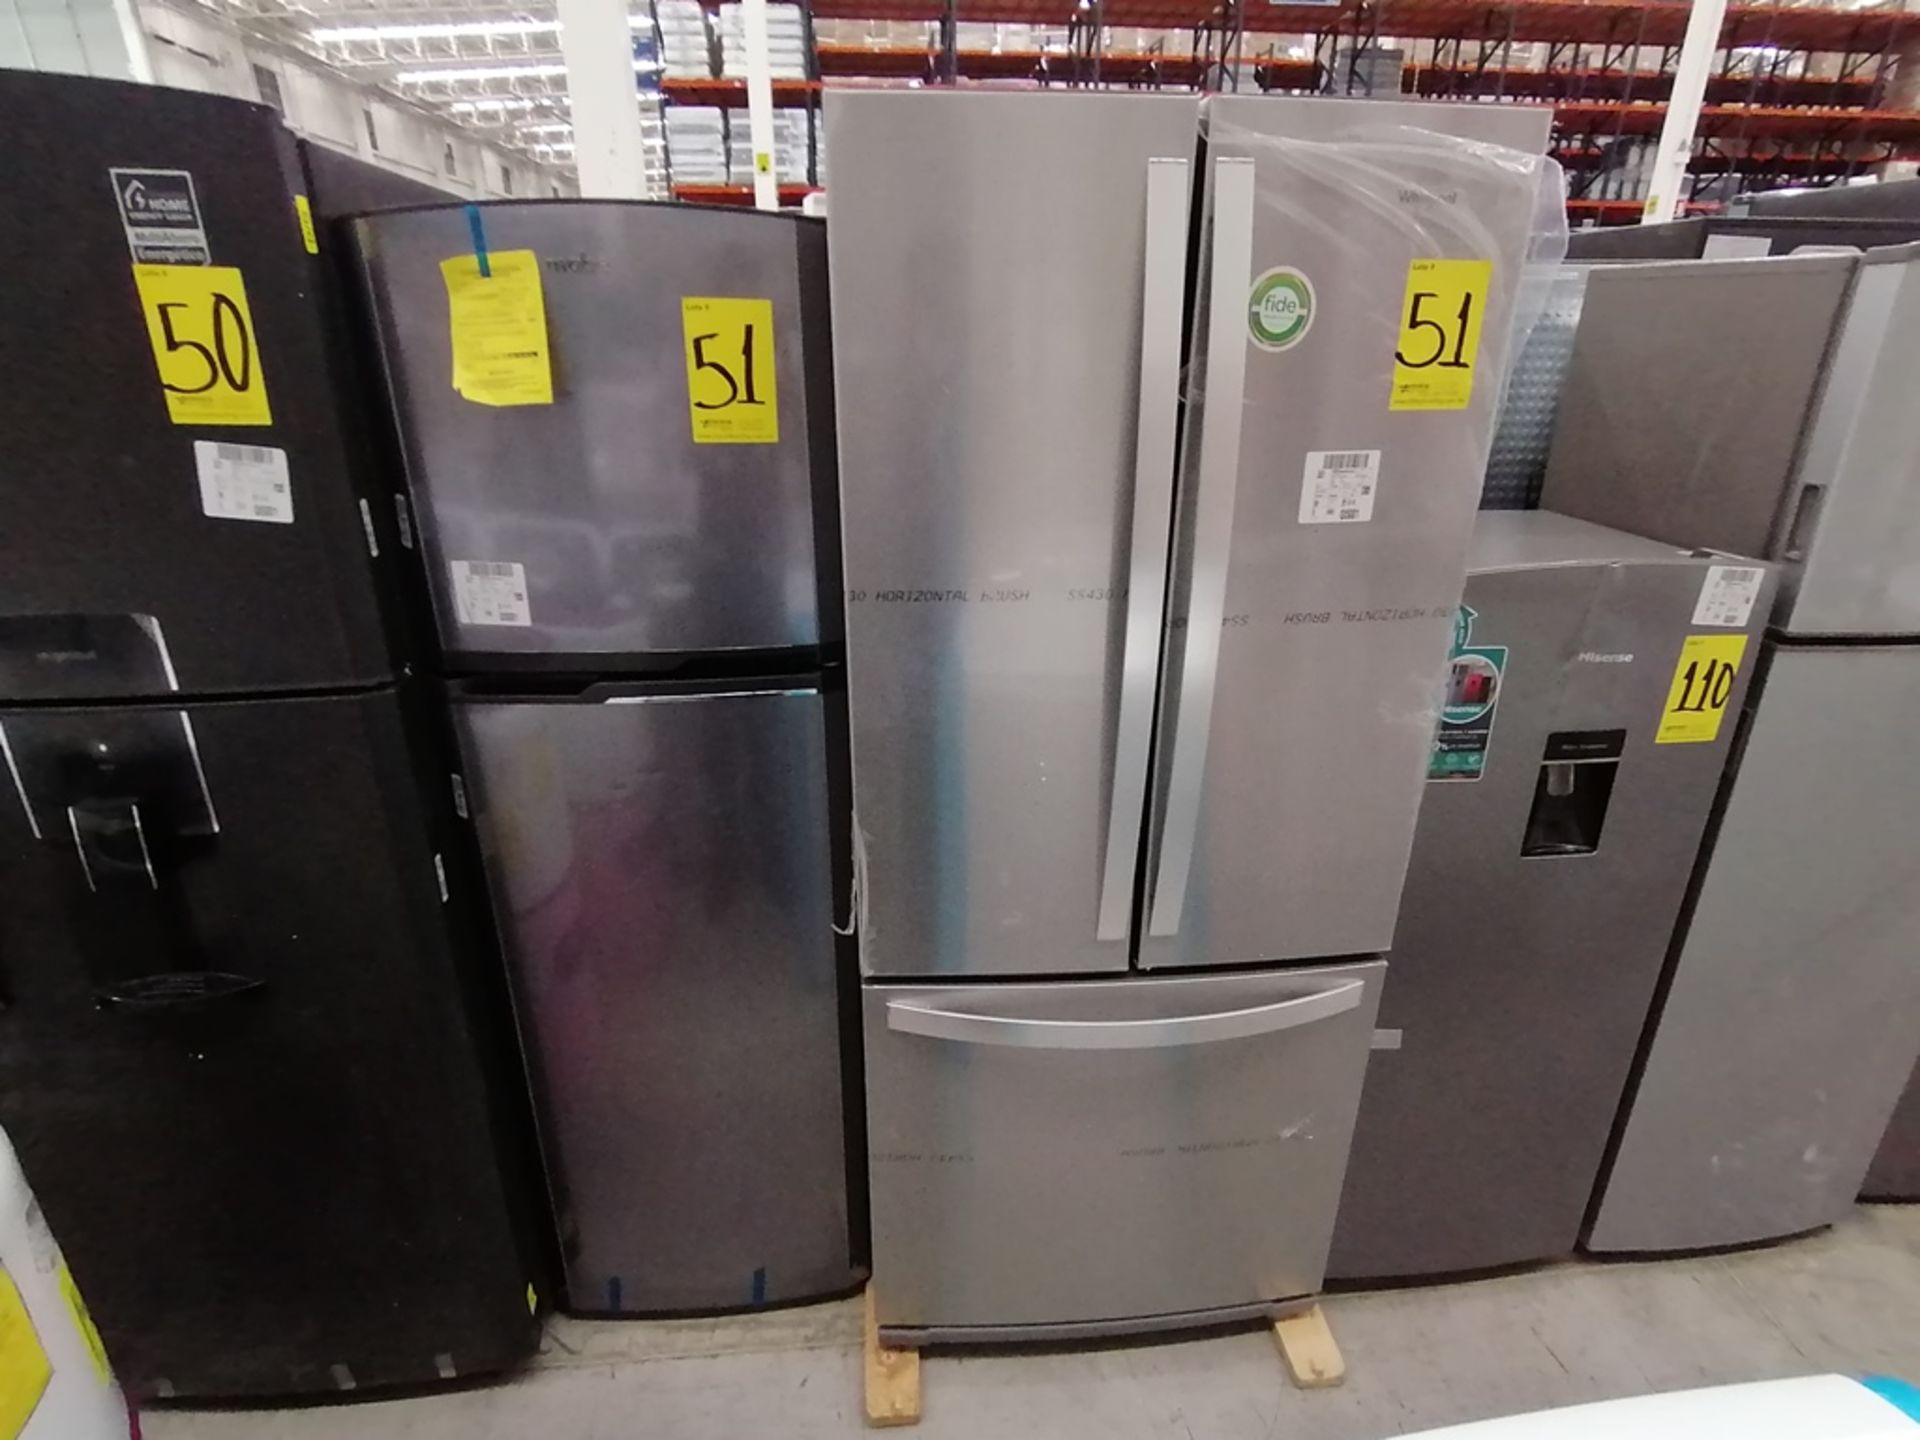 Lote de 2 refrigeradores incluye: 1 Refrigerador, Marca Mabe, Modelo RMA1025VMX, Serie 2111B618024, - Image 3 of 15